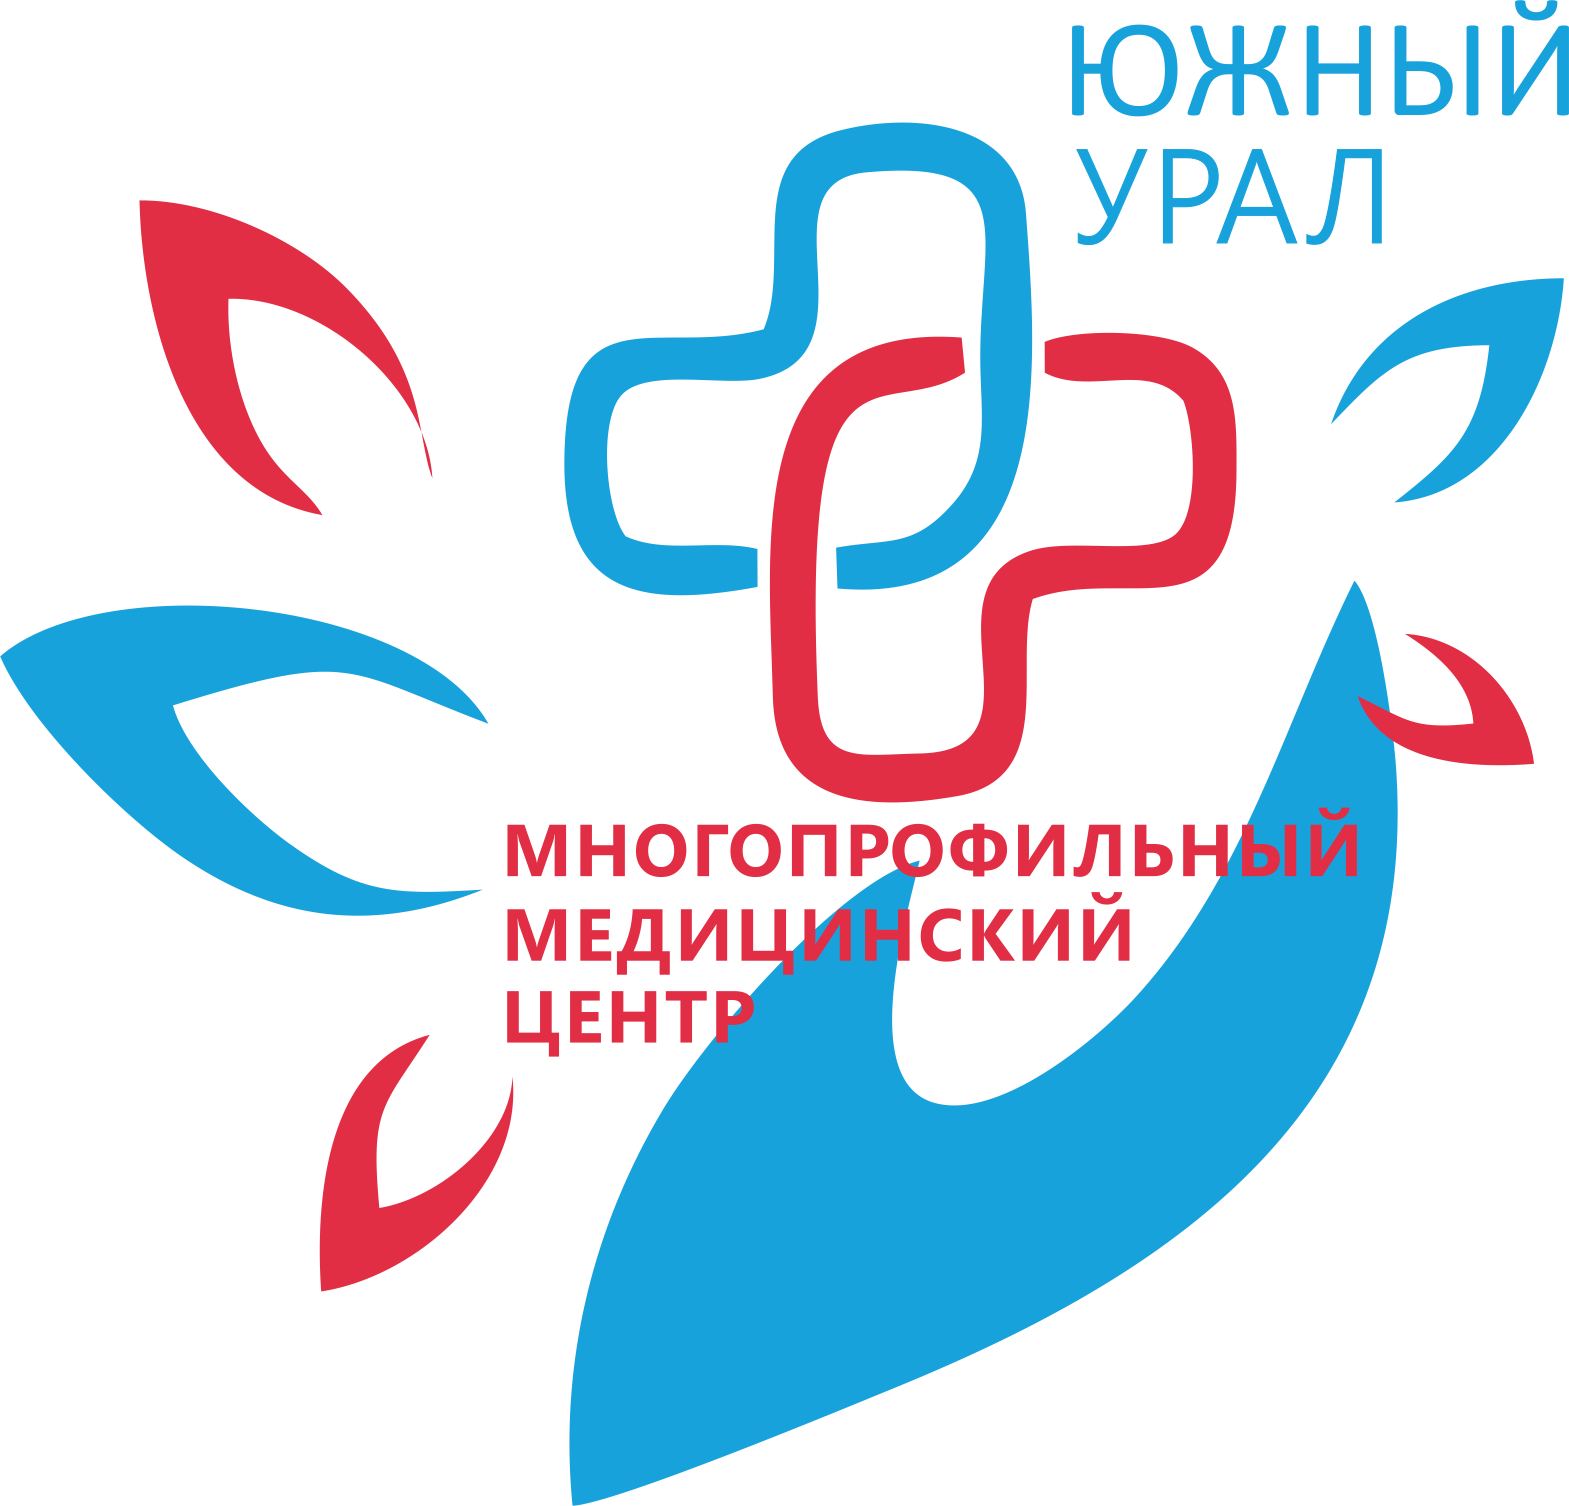 Многопрофильный медицинский центр Южный Урал